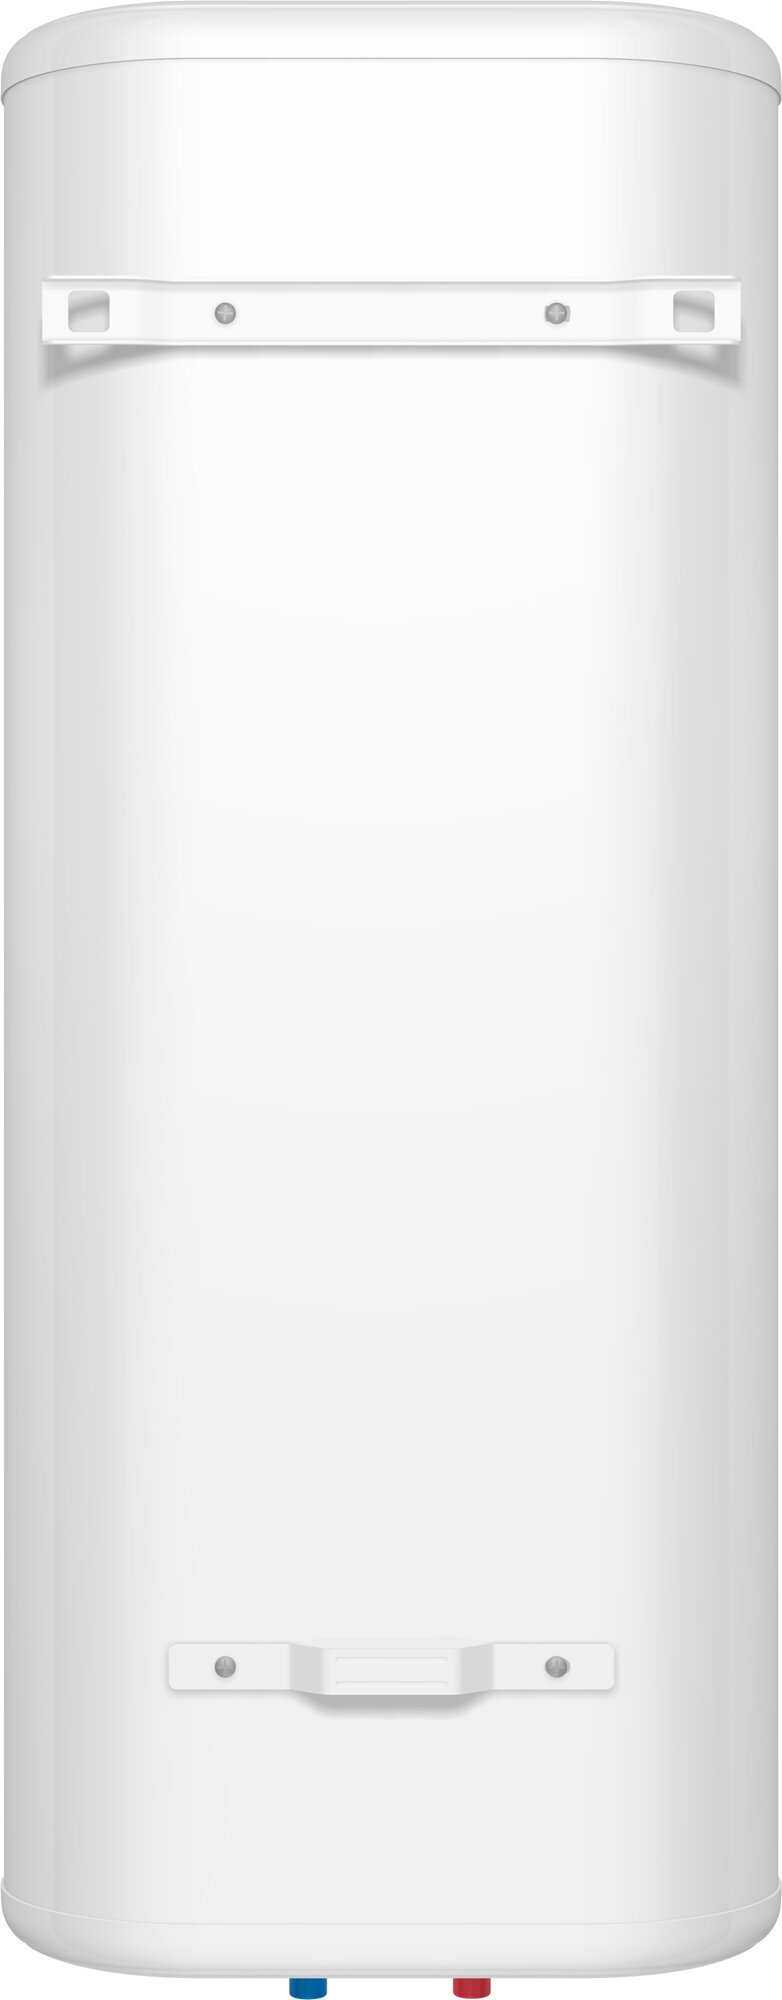 Бытовой электрический аккумуляционный водонагреватель Термекс Thermex - фото №6